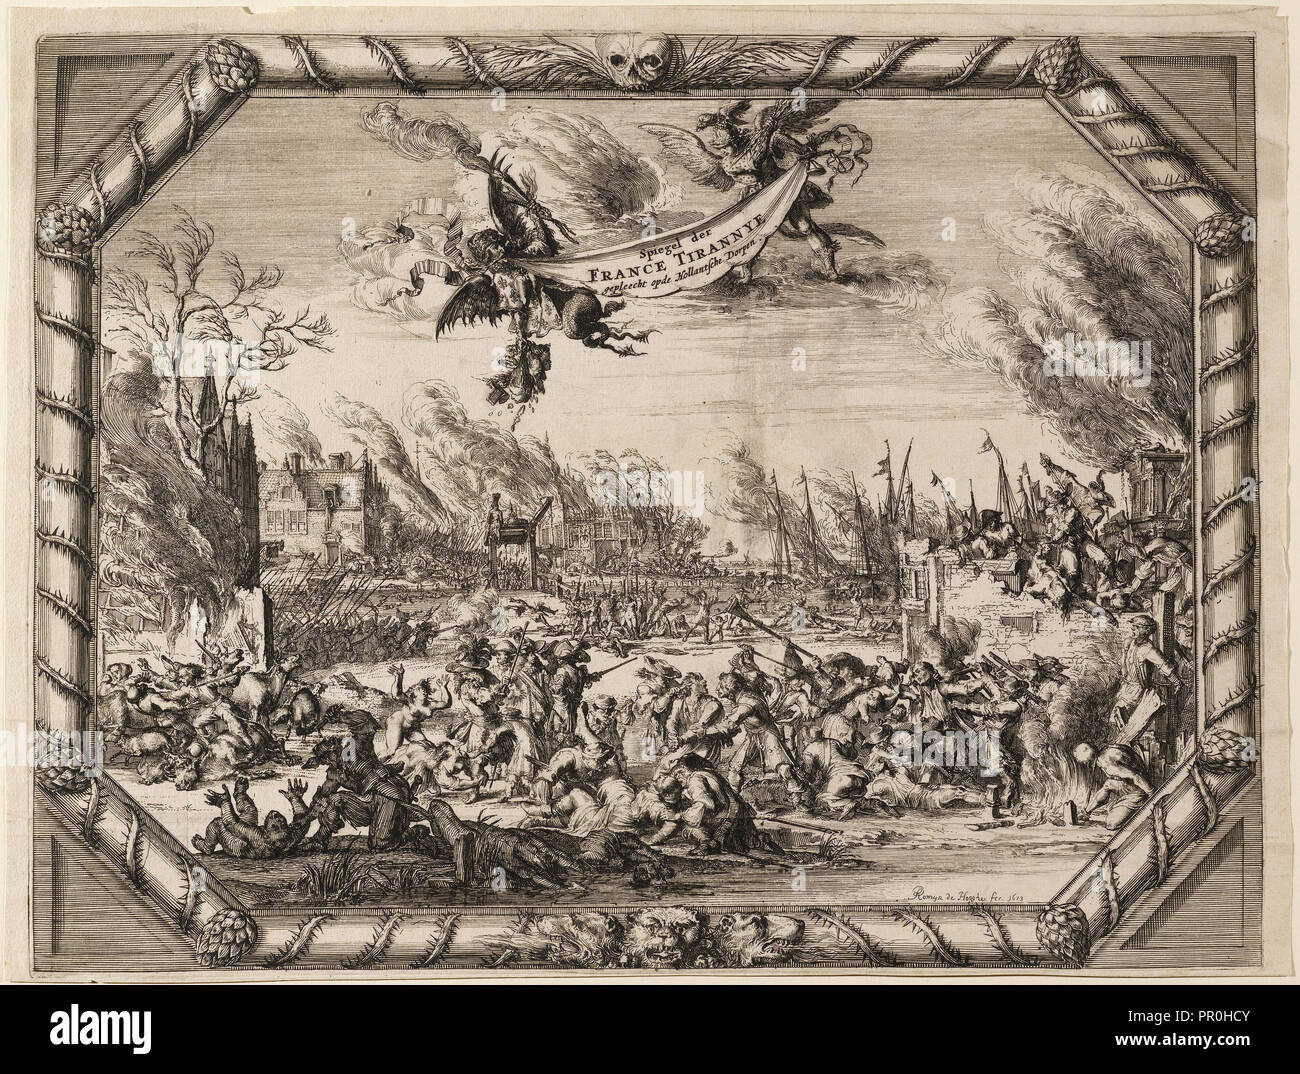 Spiegel der FRANCE TIRANNYE gepleecht opde Hollantsche Dorpen, Romeyn de Hooghe etchings, 1667-ca. 1700., de Hooghe, Romeyn Stock Photo